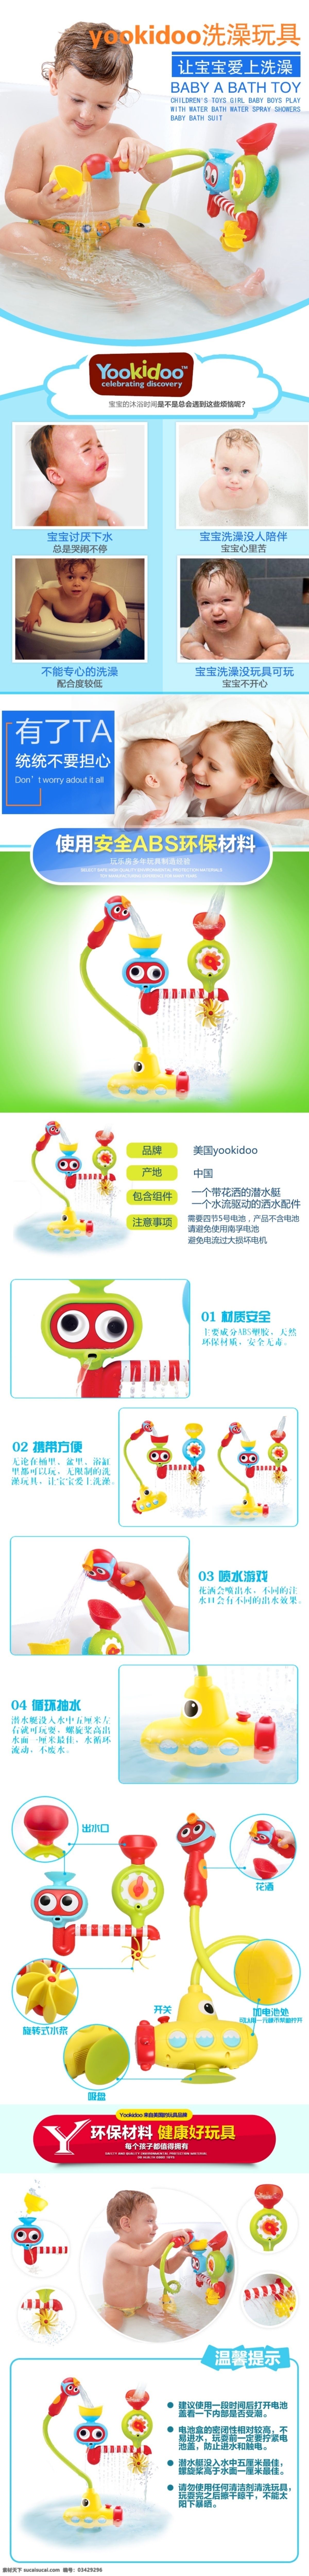 美国 yookidoo 宝宝 戏水 玩具 yookido 白色